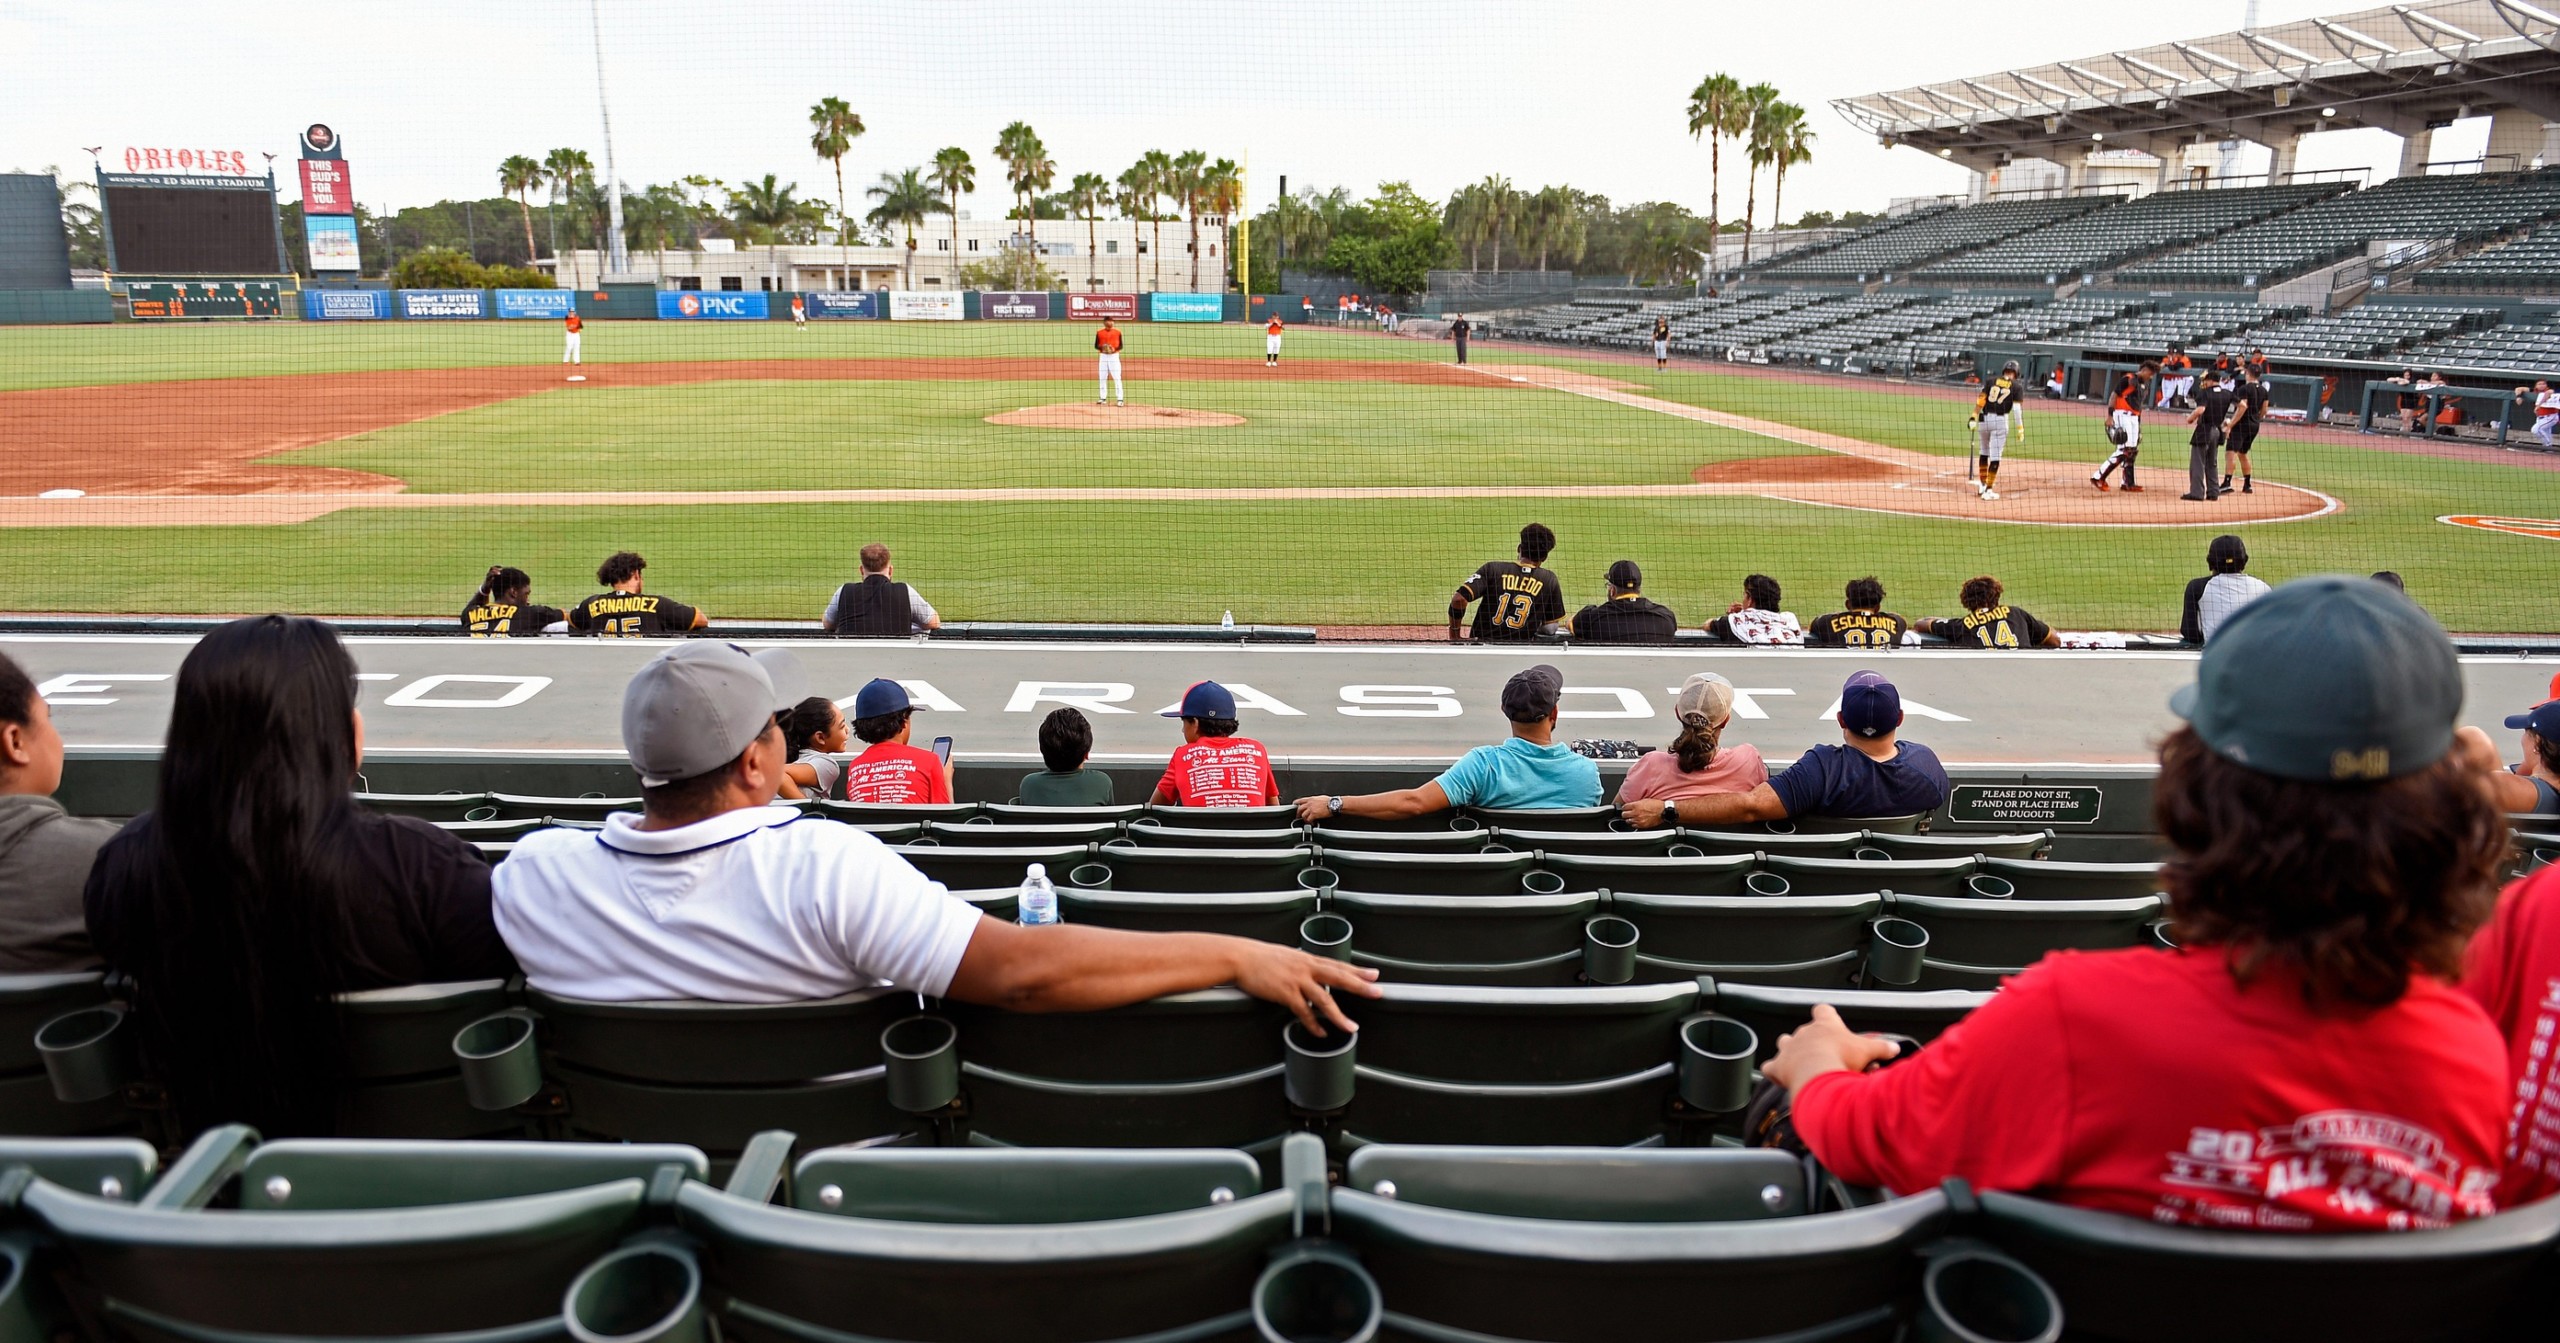 Fans-at-Sarasota-baseball-game